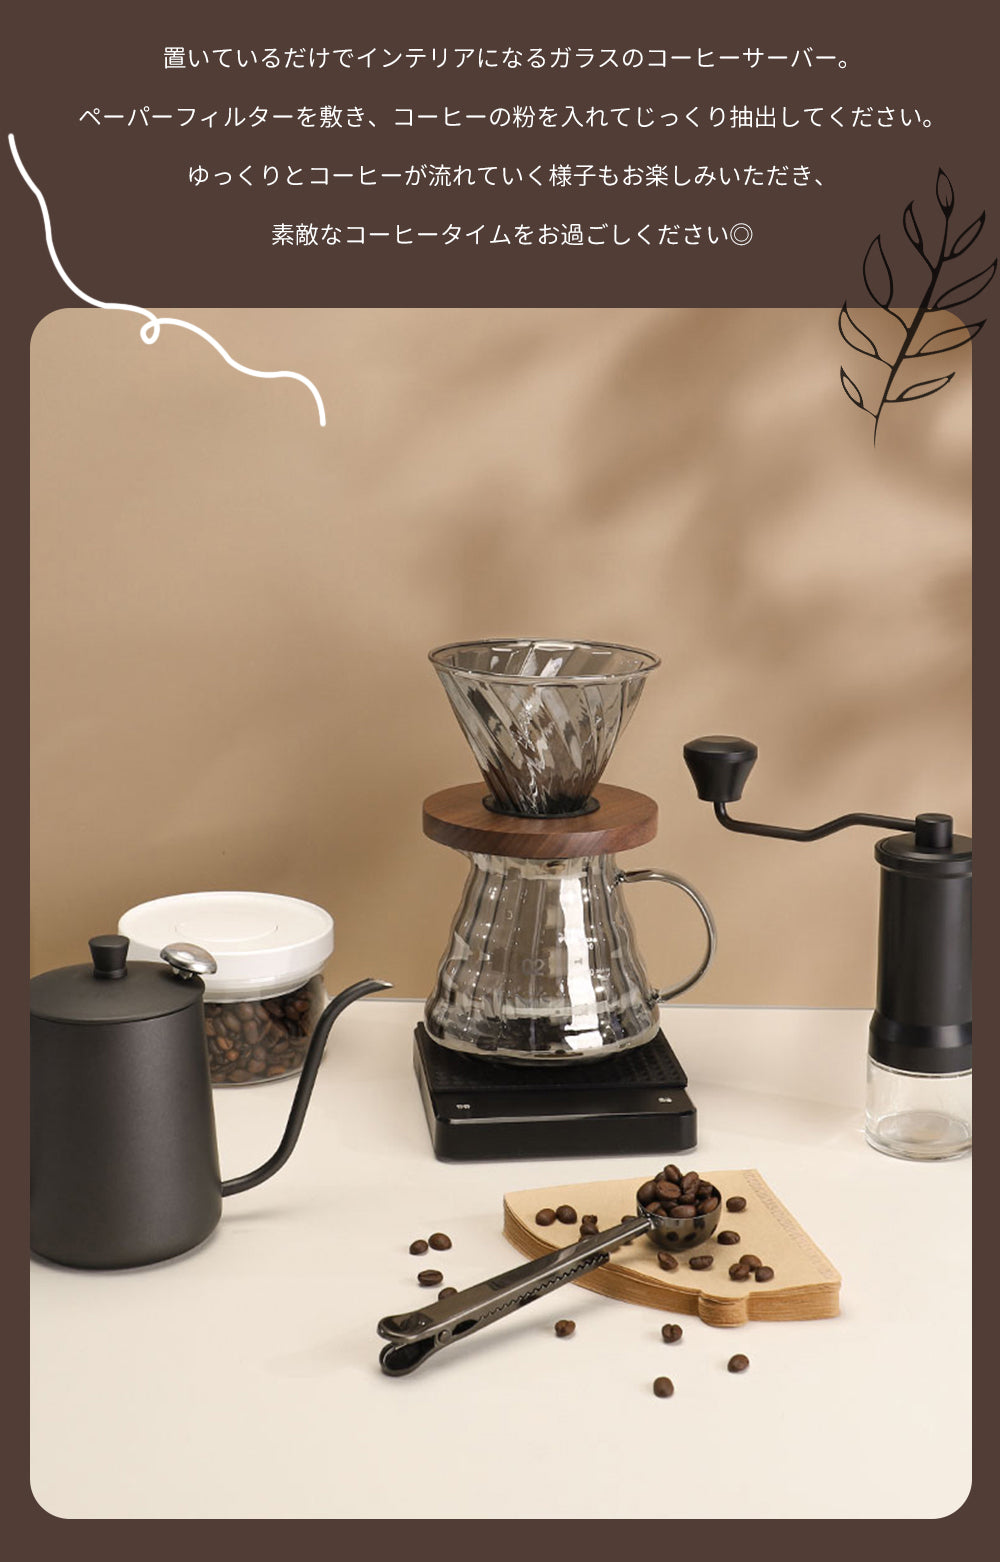 IwaiLoft 世界各国で高い評価を得ている コーヒーサーバー  ガラスドリッパー セット コーヒーポット 500ml V60 コーヒードリッパー 耐熱ガラス 4cup 円錐型 ハンドドリッパー ドリッパーコーヒー コーヒー用品 珈琲 コーヒー器具 おしゃれ